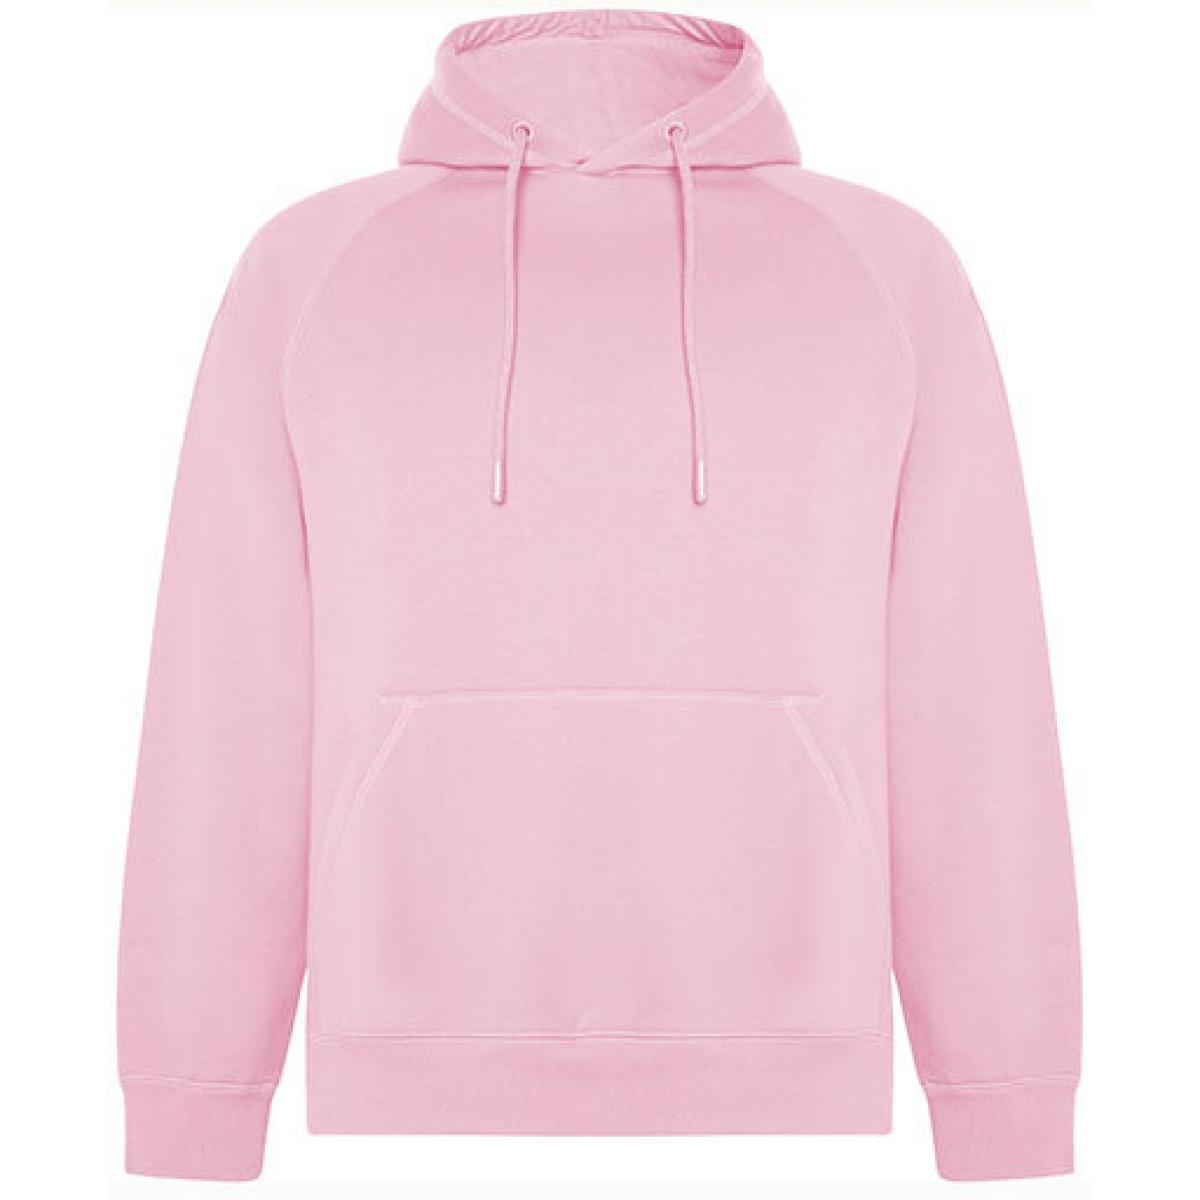 Hersteller: Roly Eco Herstellernummer: SU1074 Artikelbezeichnung: Vinson Organic Hooded Sweatshirt - Unisex Kapuzenpullover Farbe: Light Pink 48